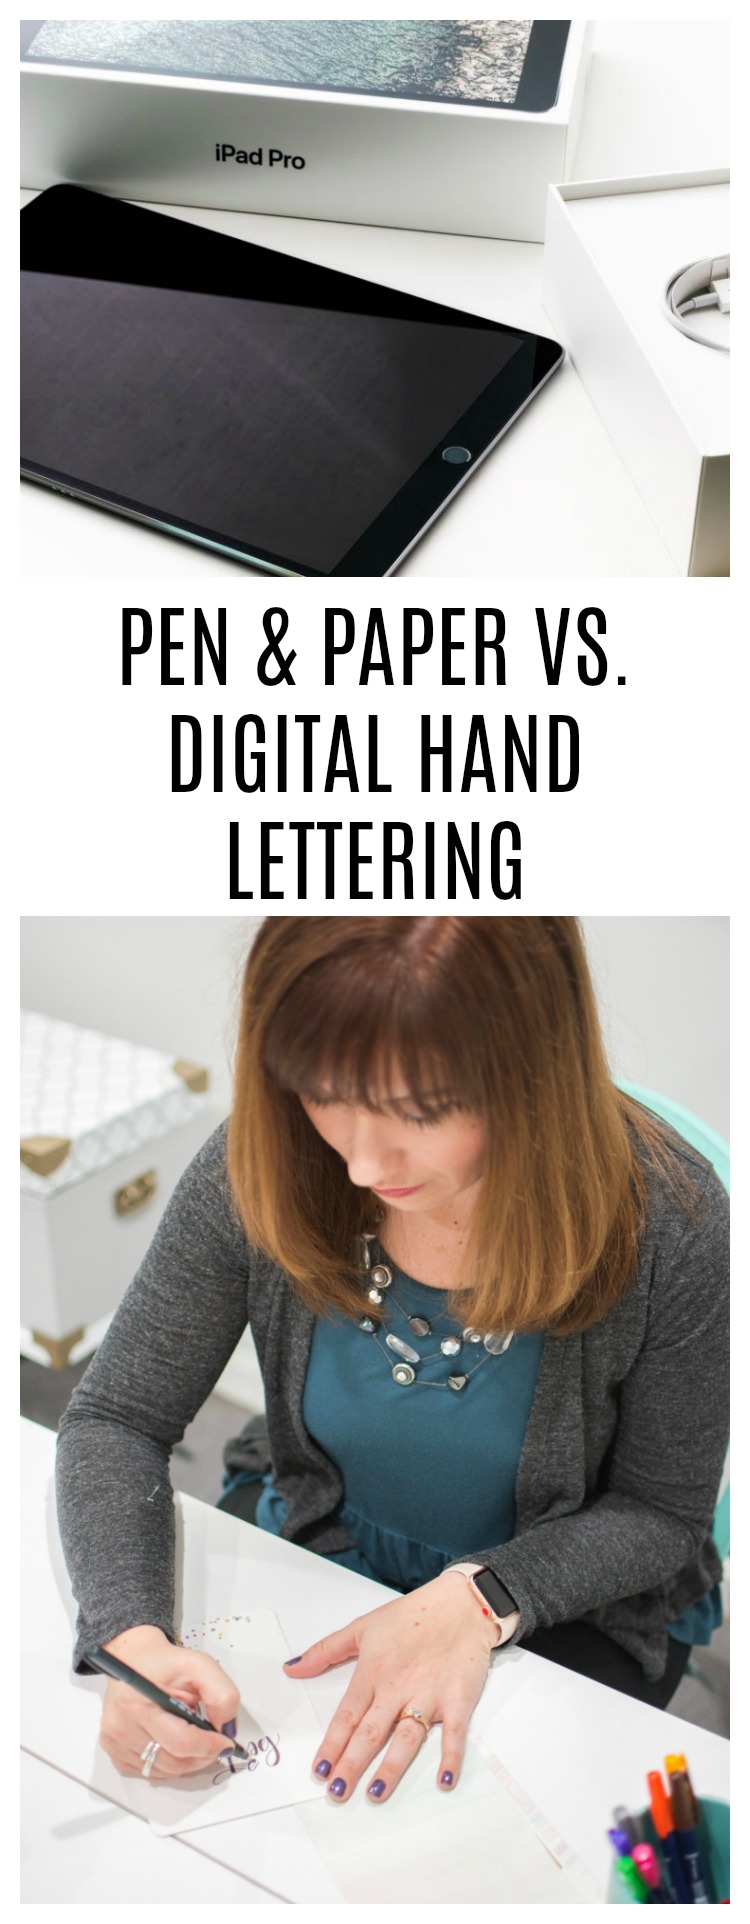 Pen & Paper vs. Digital Hand Lettering